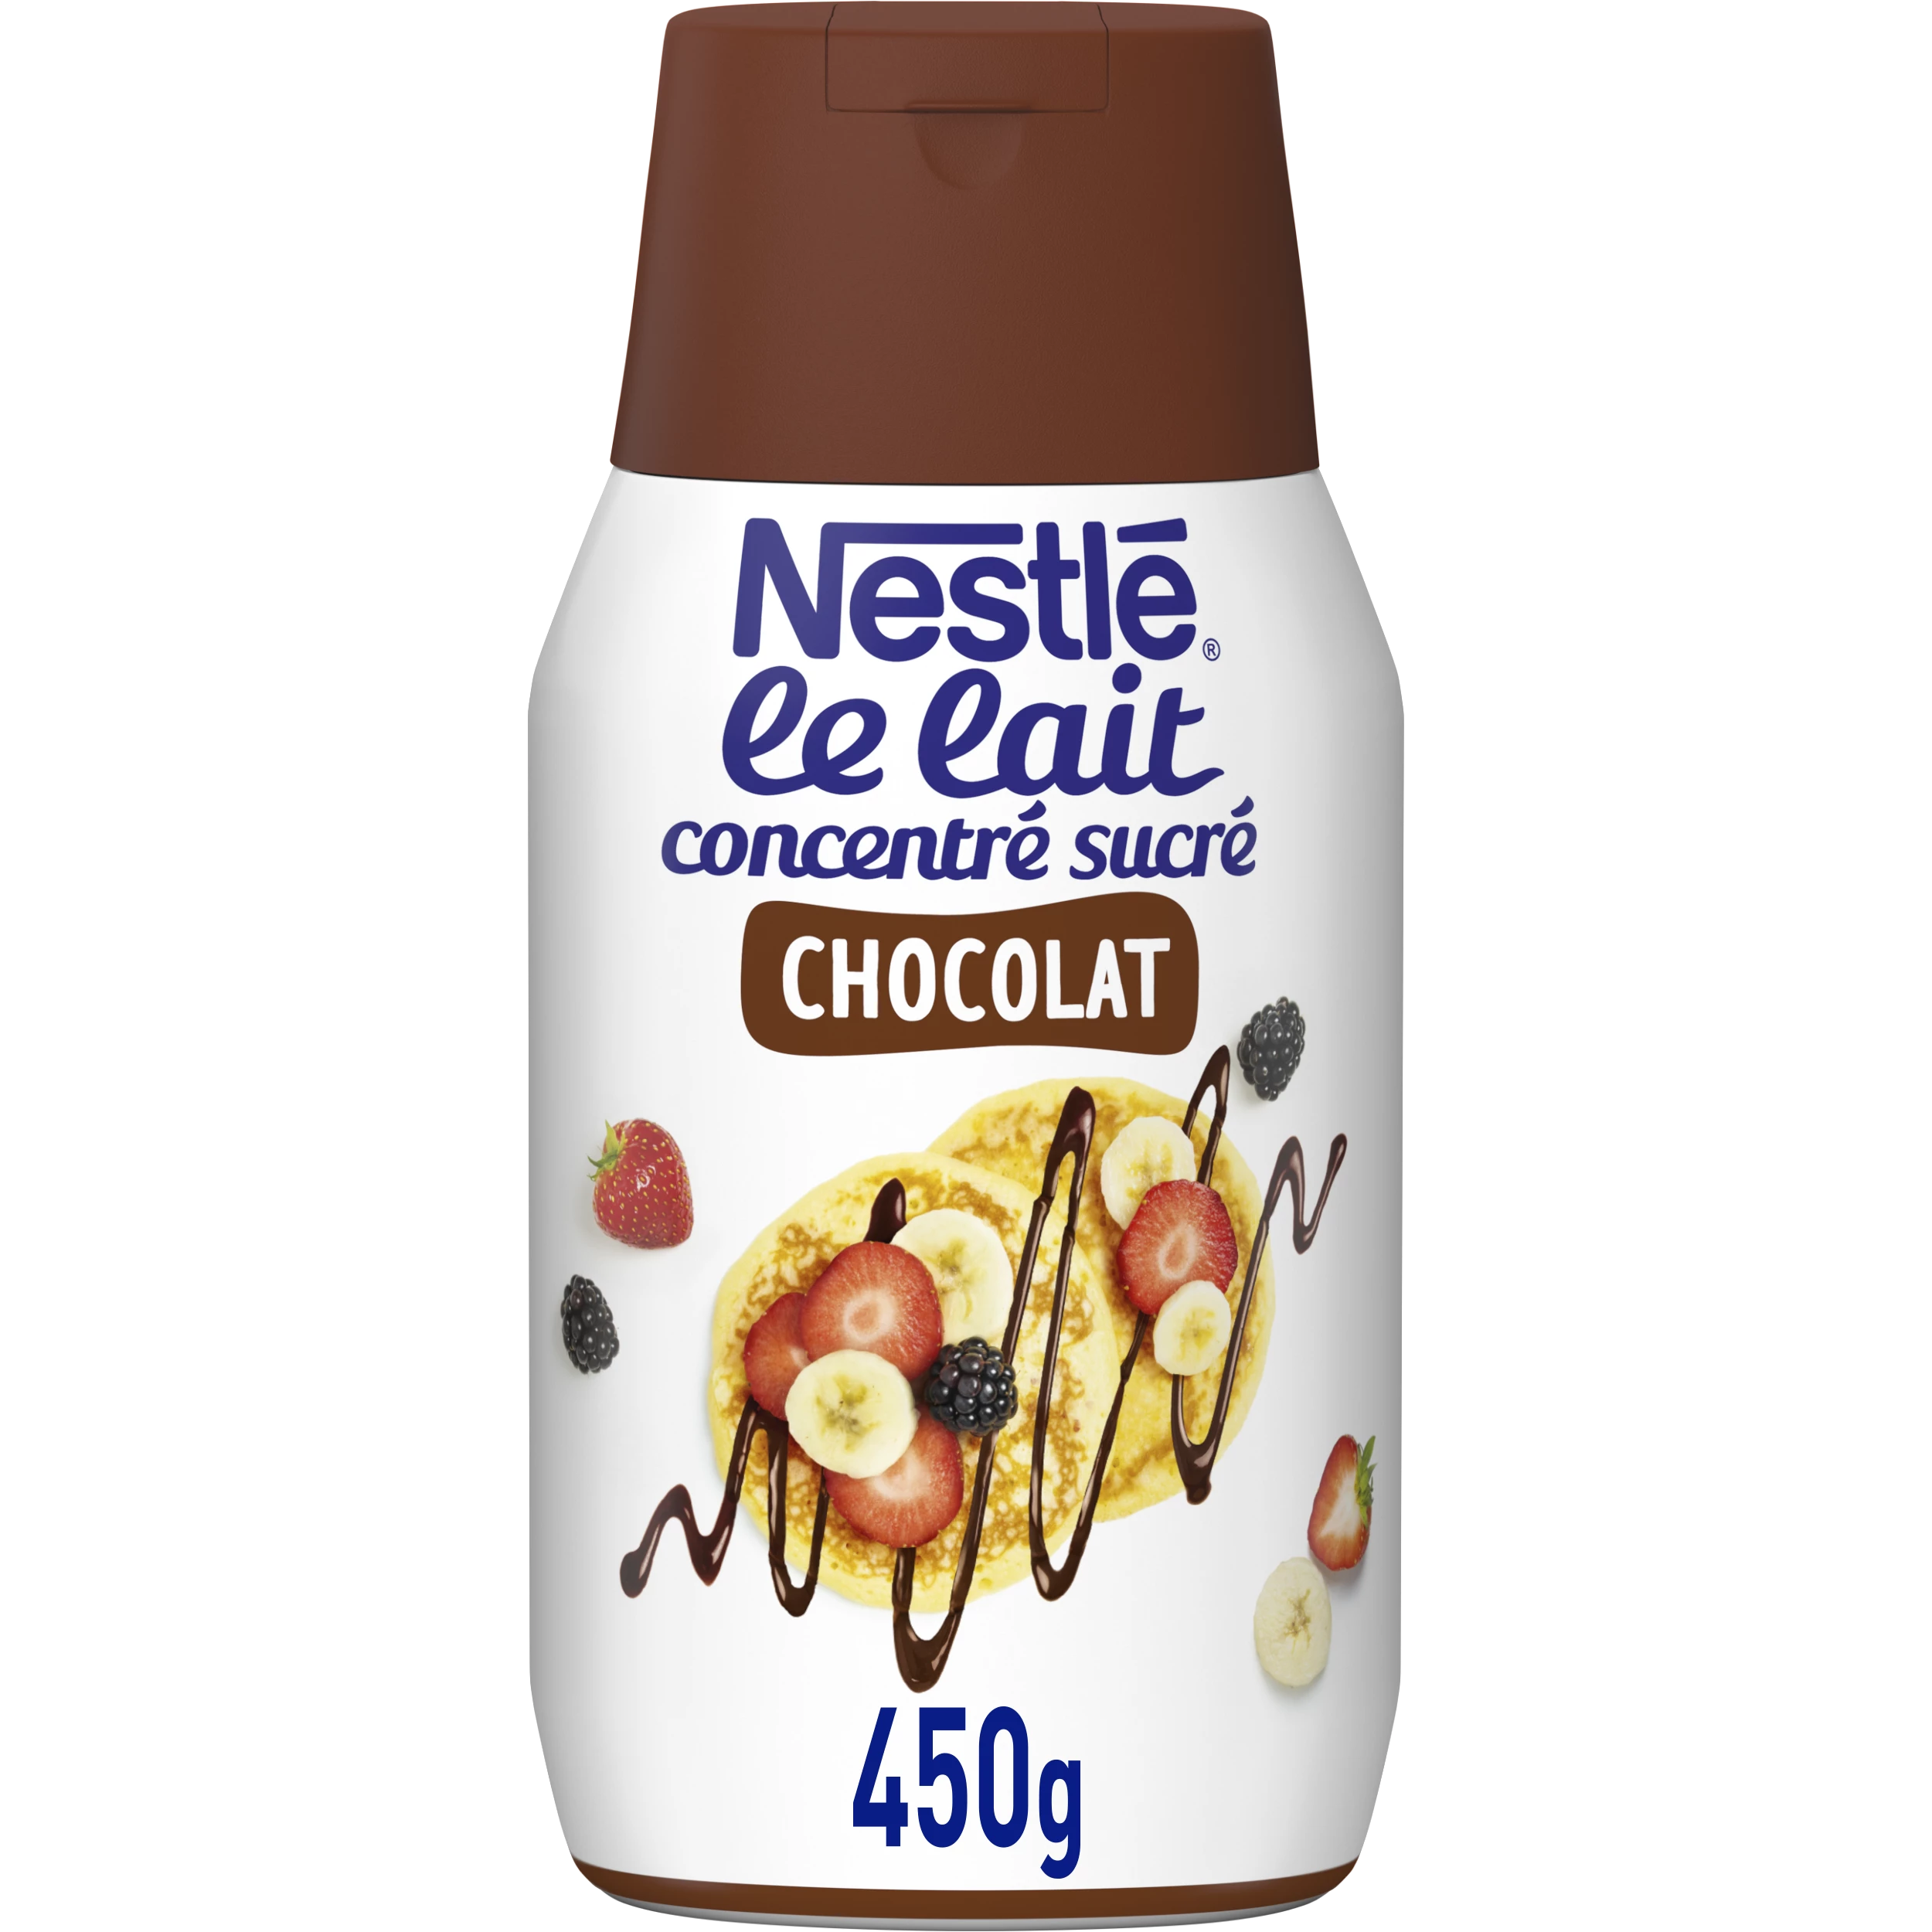 Promotion Régilait Nuage de lait maxi coupelles, Lot de 2x(10x14)g